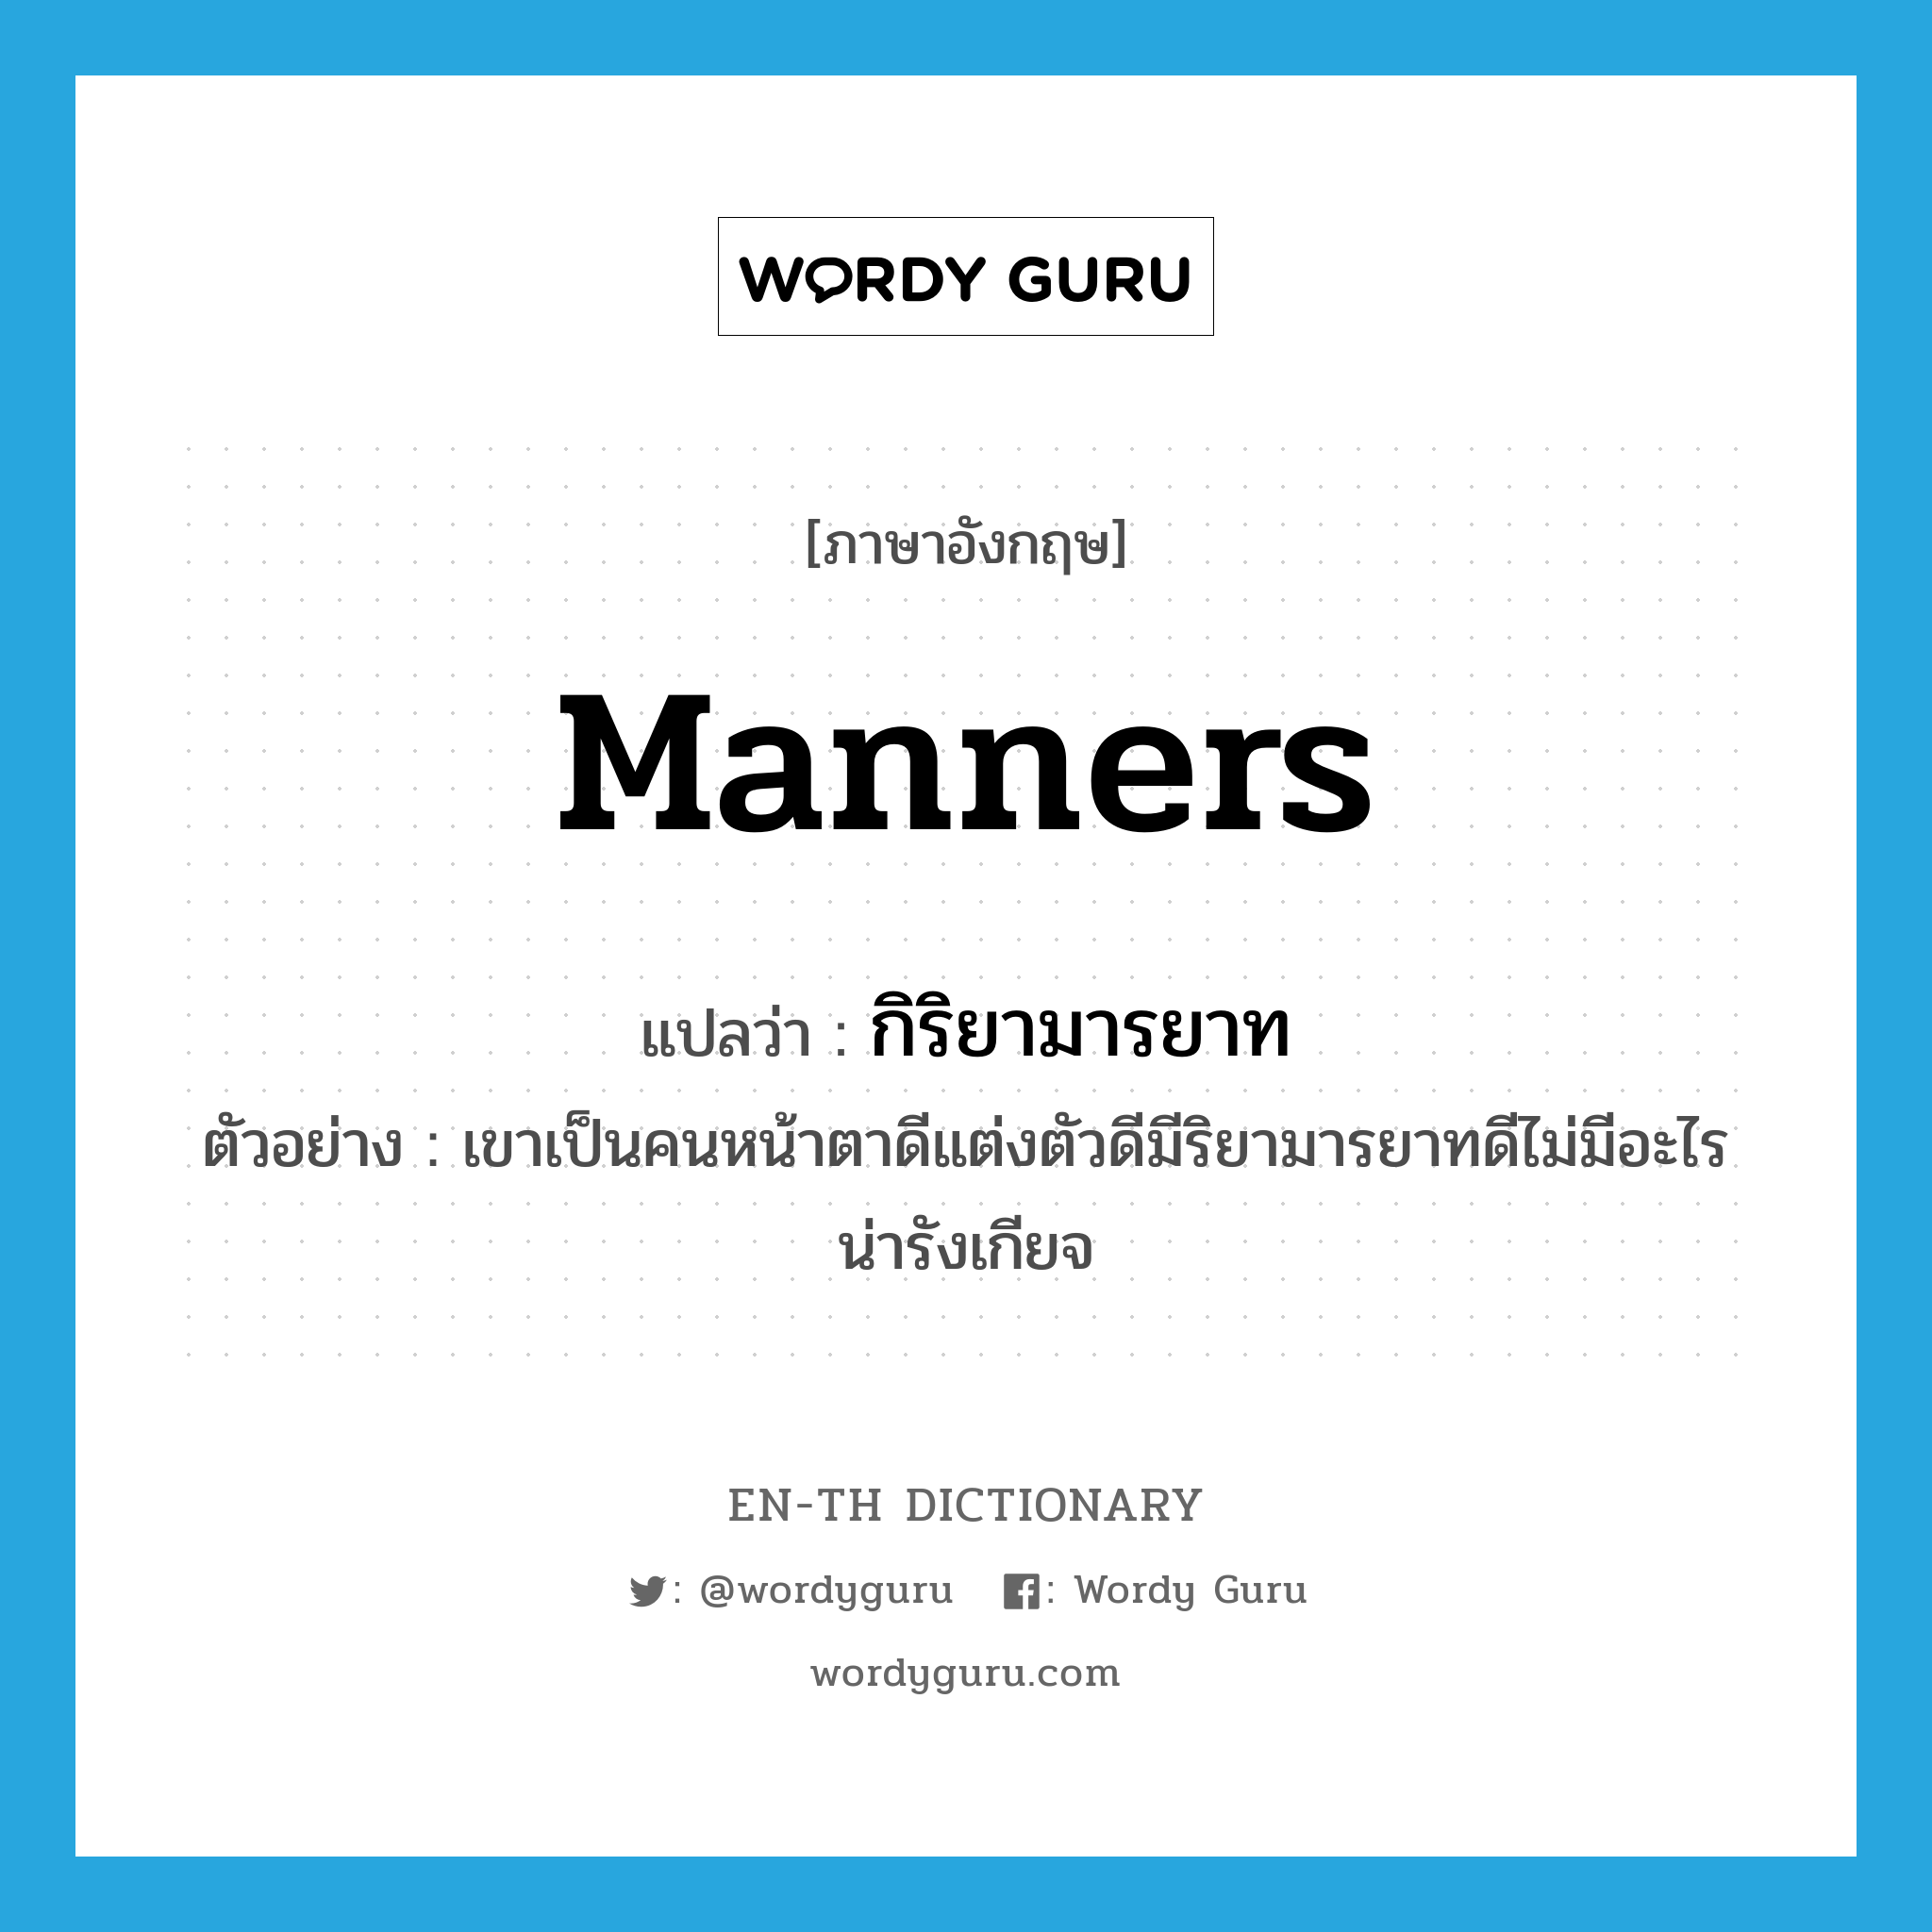 manners แปลว่า?, คำศัพท์ภาษาอังกฤษ manners แปลว่า กิริยามารยาท ประเภท N ตัวอย่าง เขาเป็นคนหน้าตาดีแต่งตัวดีมีริยามารยาทดีไม่มีอะไรน่ารังเกียจ หมวด N